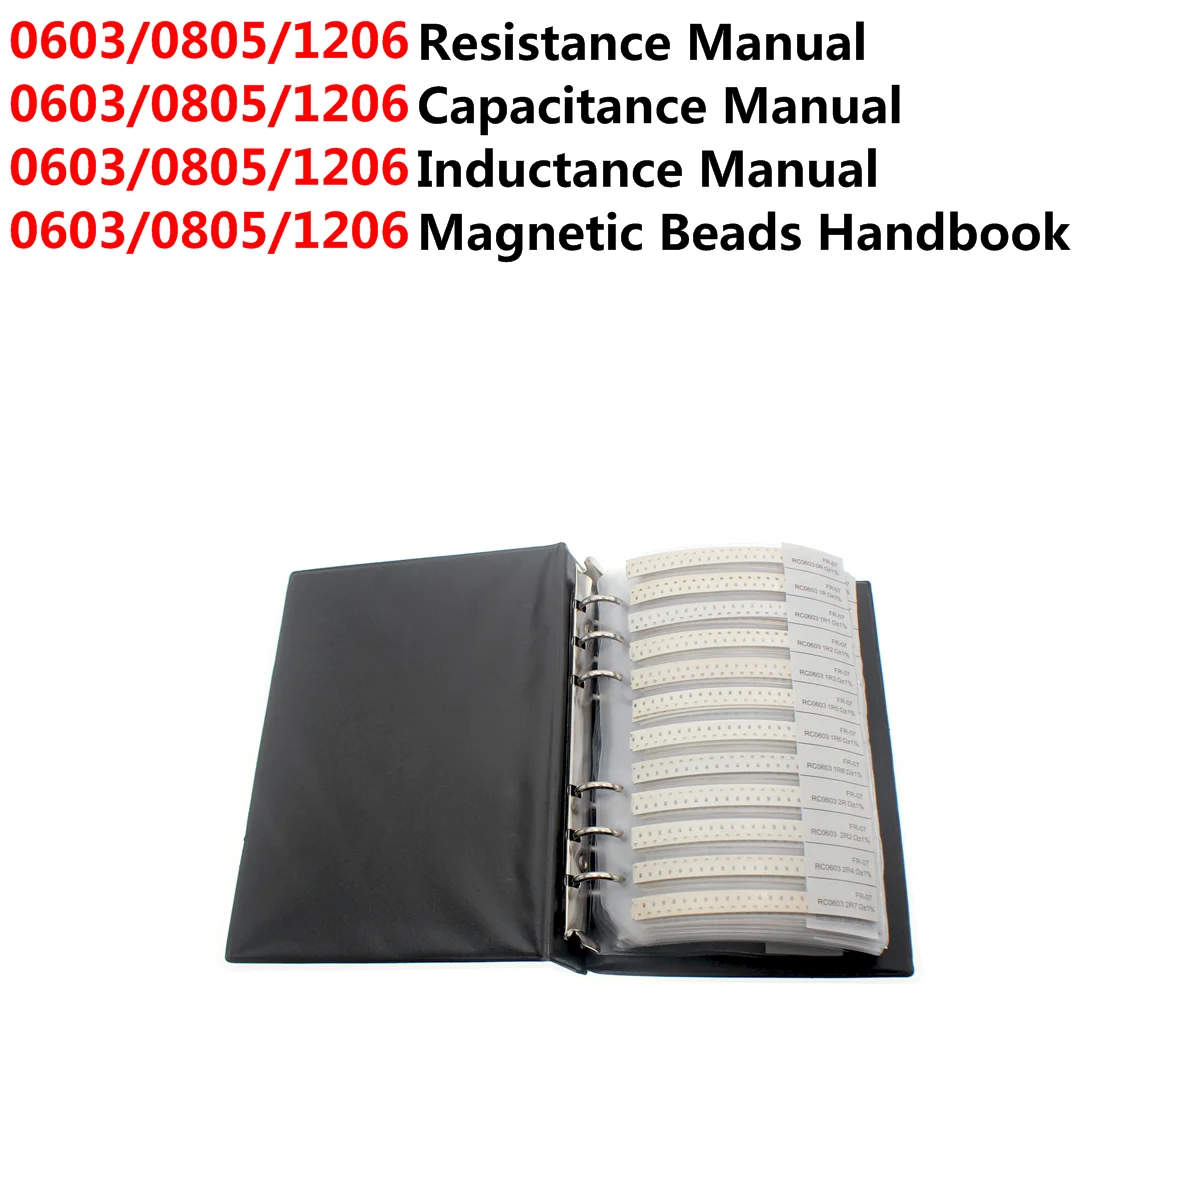 0603 0805 1206 resistore condensatore induttanza perline magnetiche campione libro ibuw SMD Kit assortito